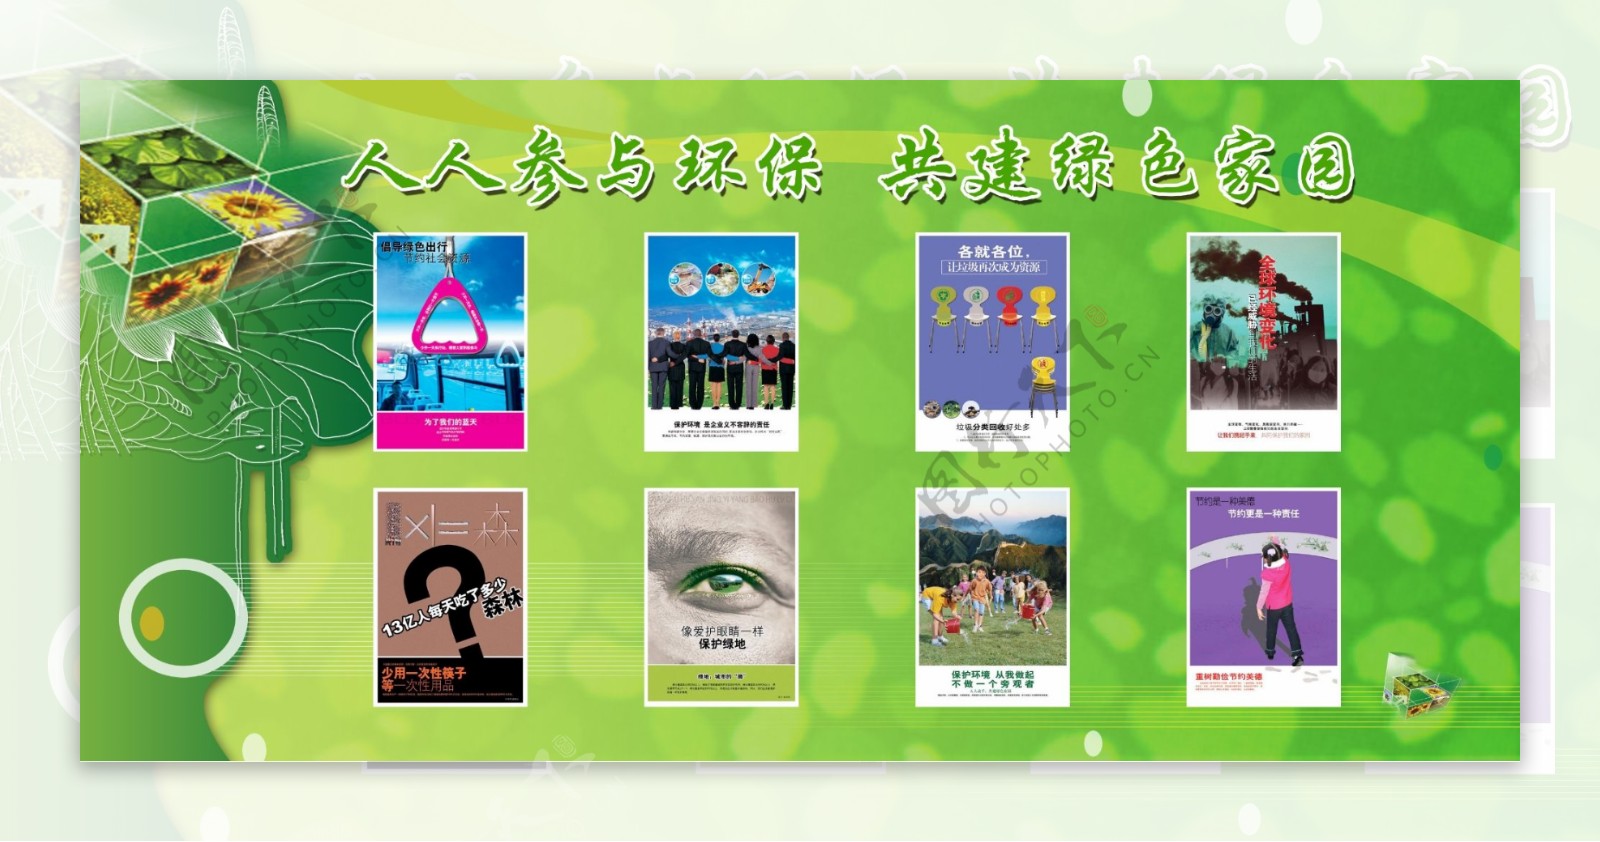 环保宣传展板绿色风格环保素材图片展设计